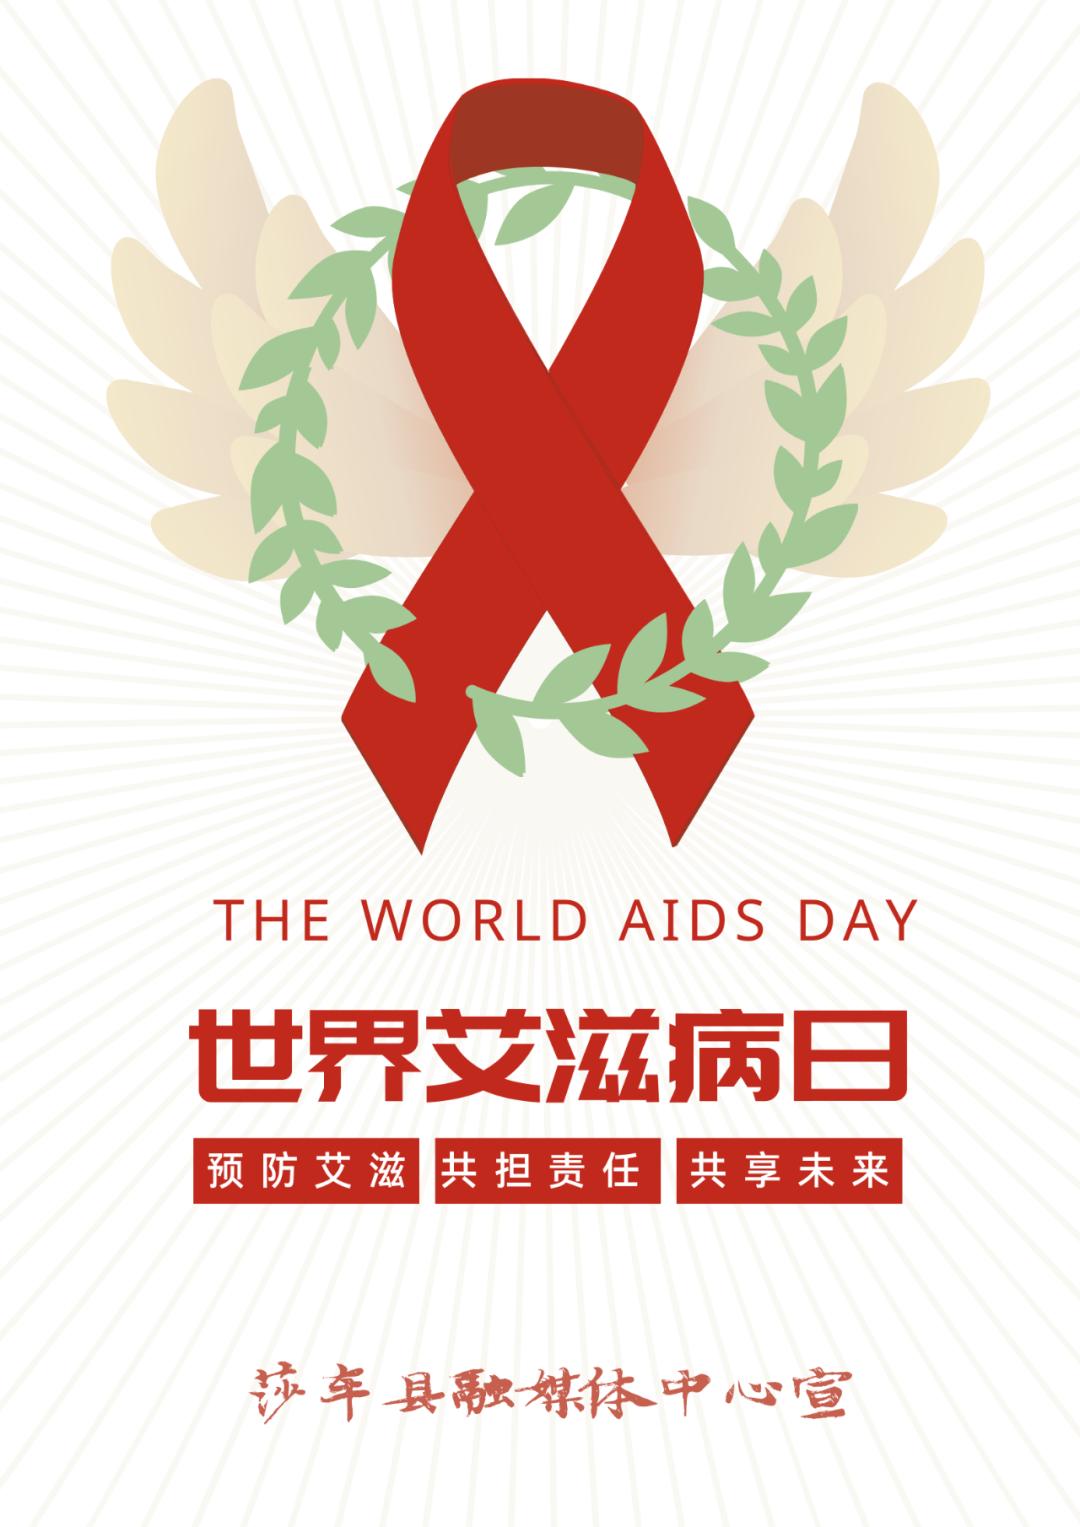 莎车县开展第33个世界艾滋病日宣传活动